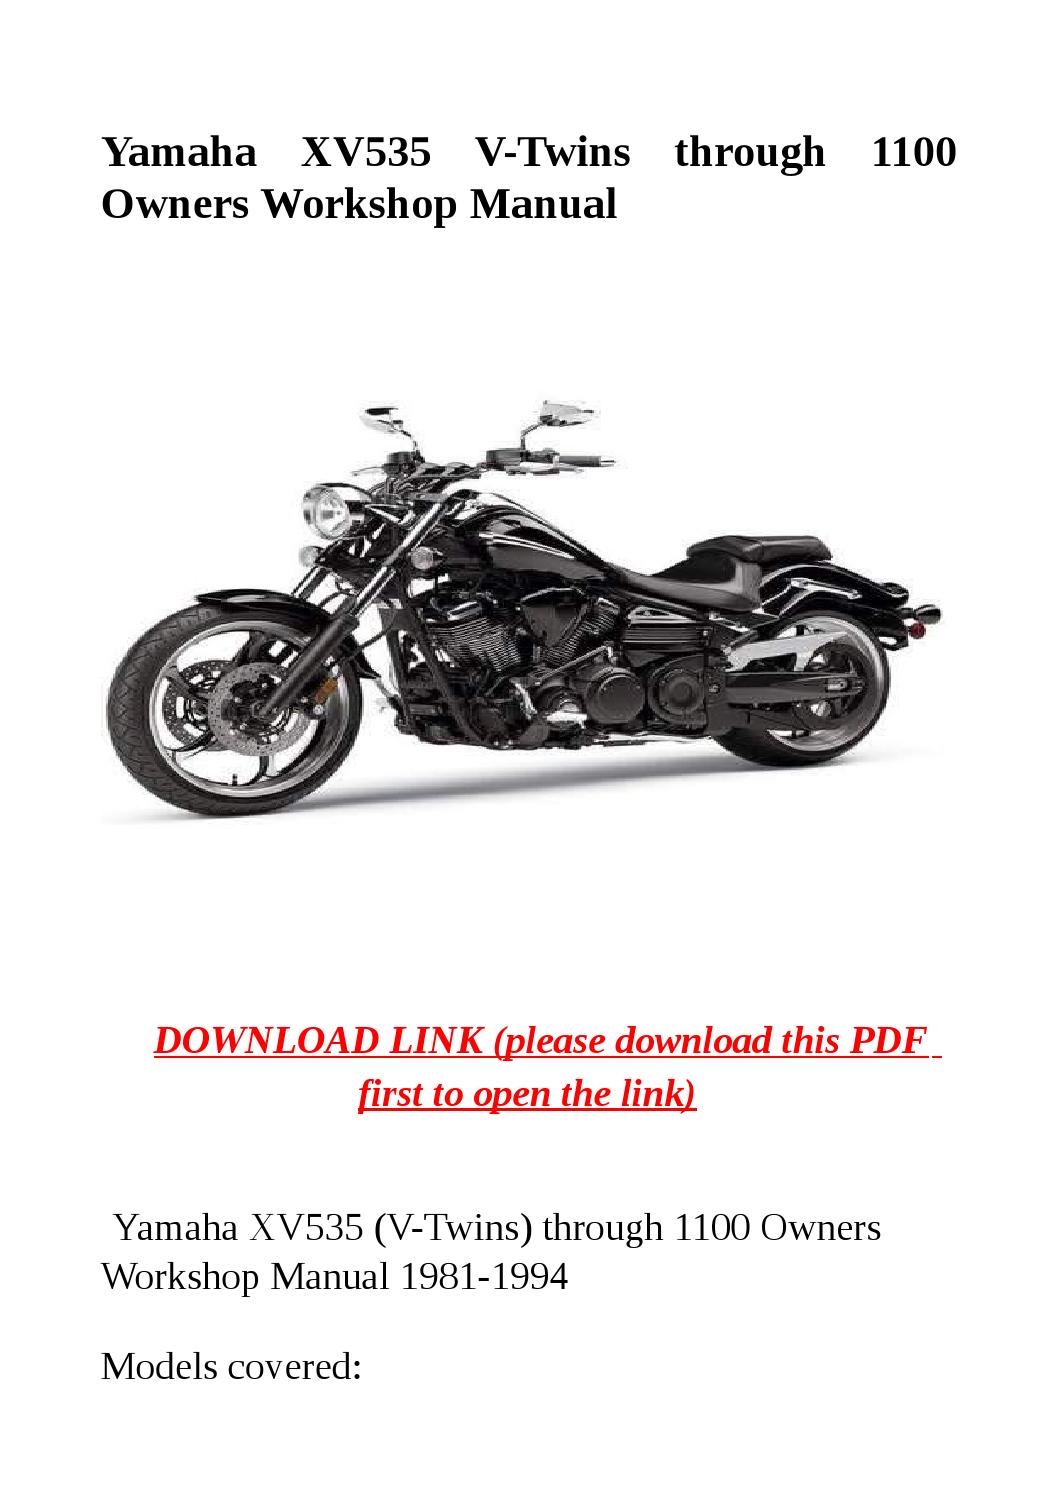 Yamaha virago 535 repair manual free download